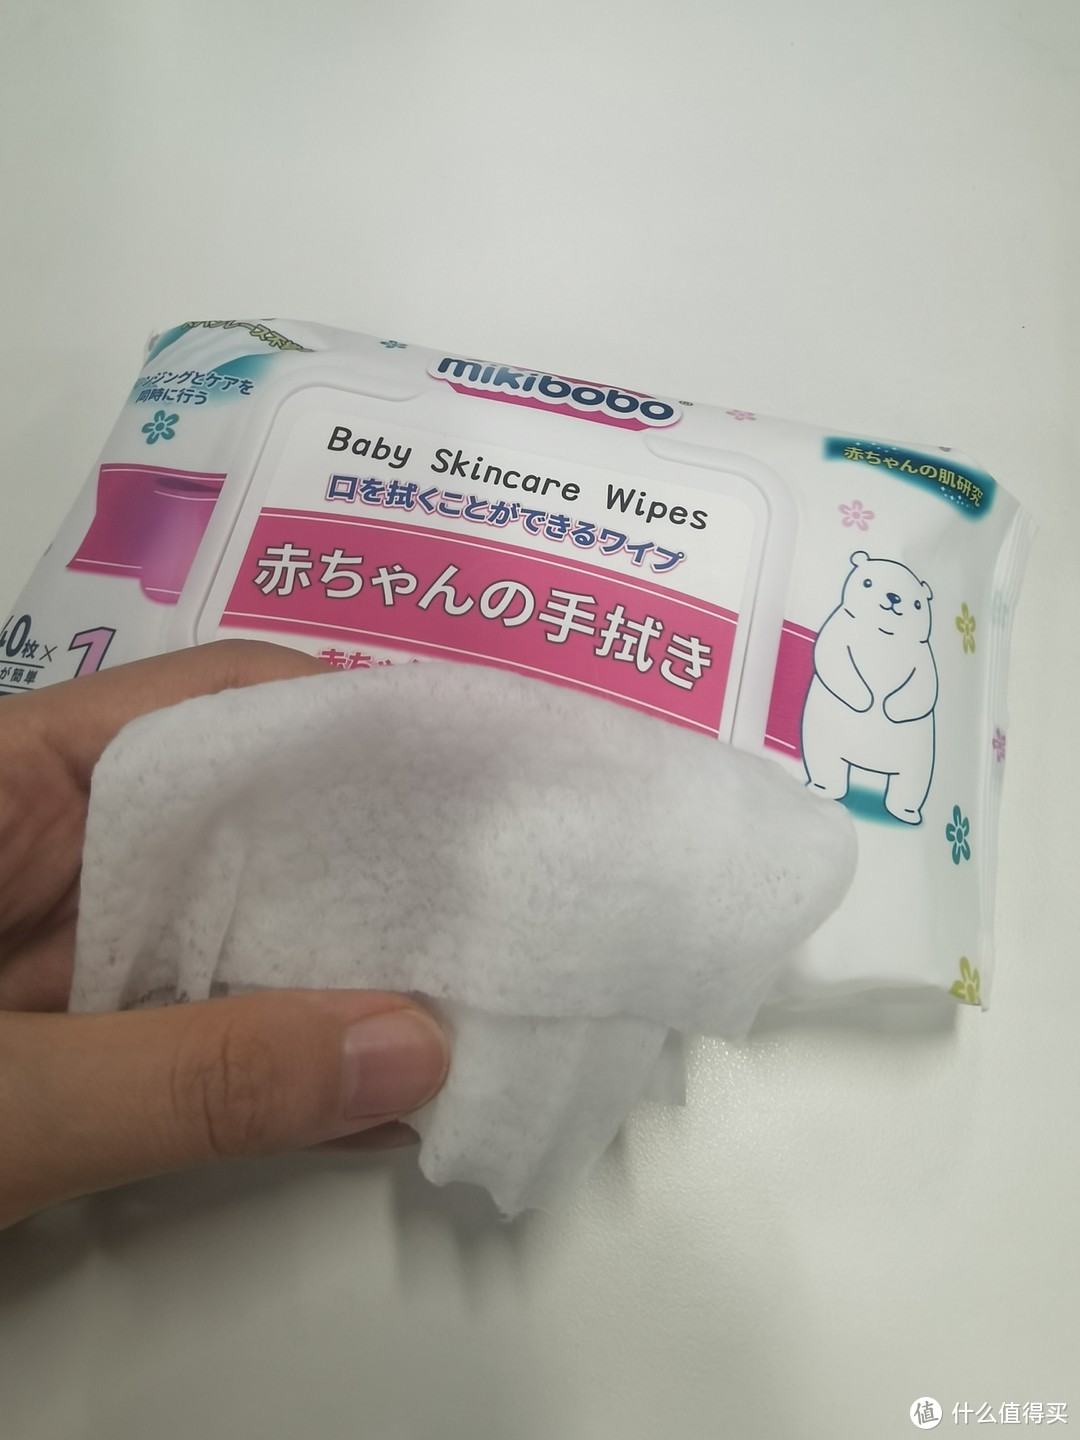 超柔软的mikibobo婴儿湿巾，直接按箱囤